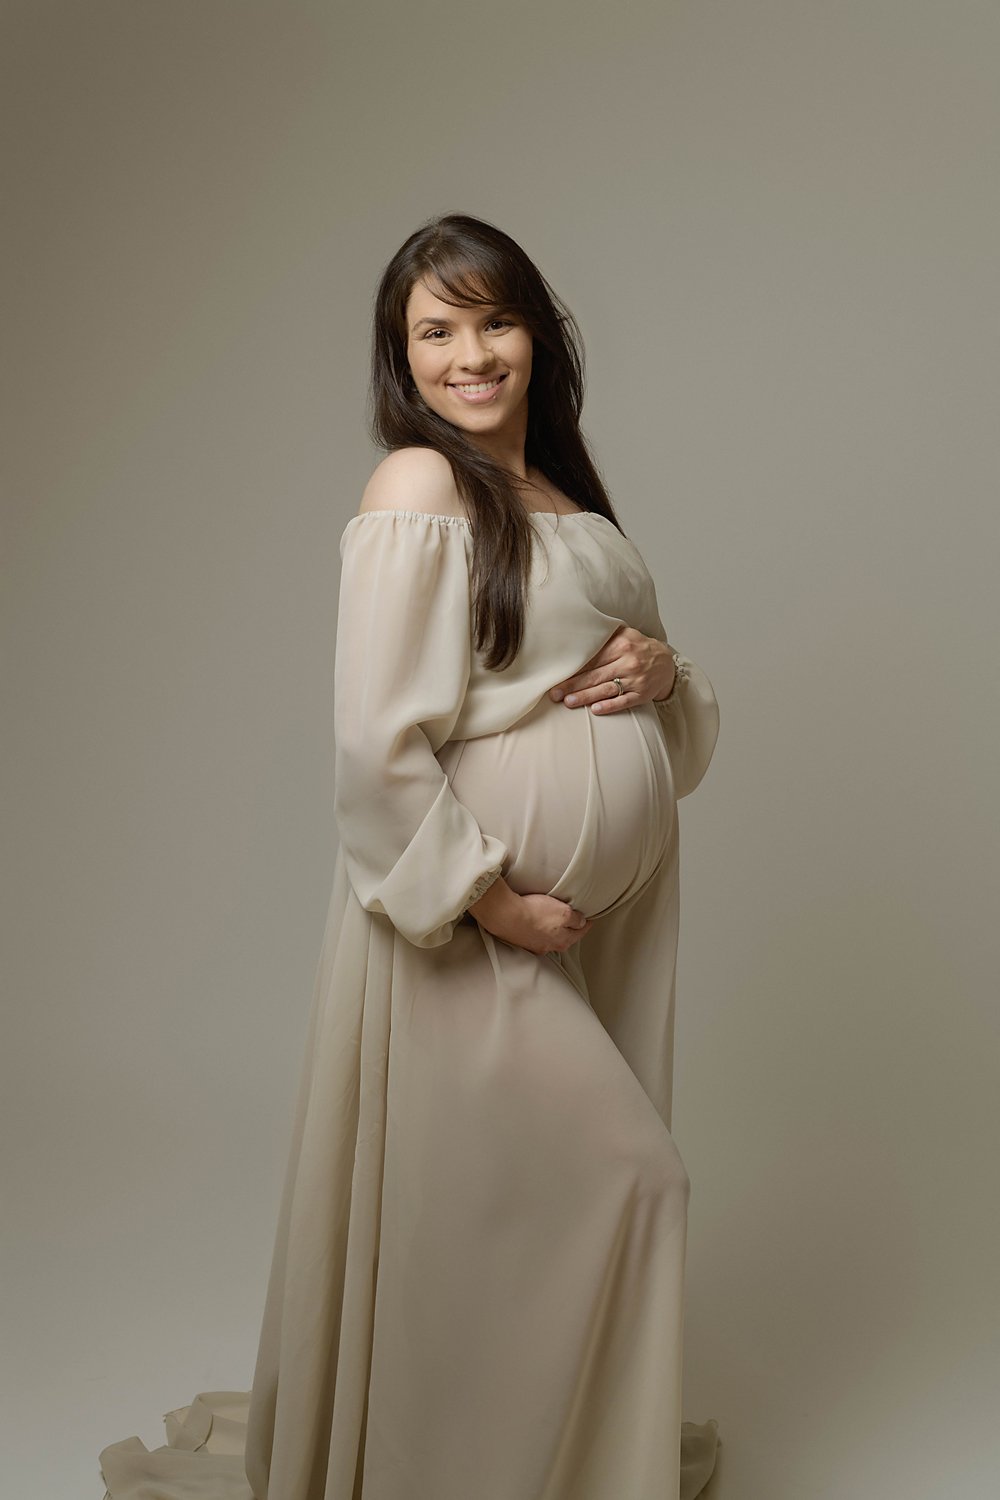 kimberly-gb-photography-maternity-maternidad-fotografia-embarazo-bebe-fotografo-puerto-rico-058.jpg